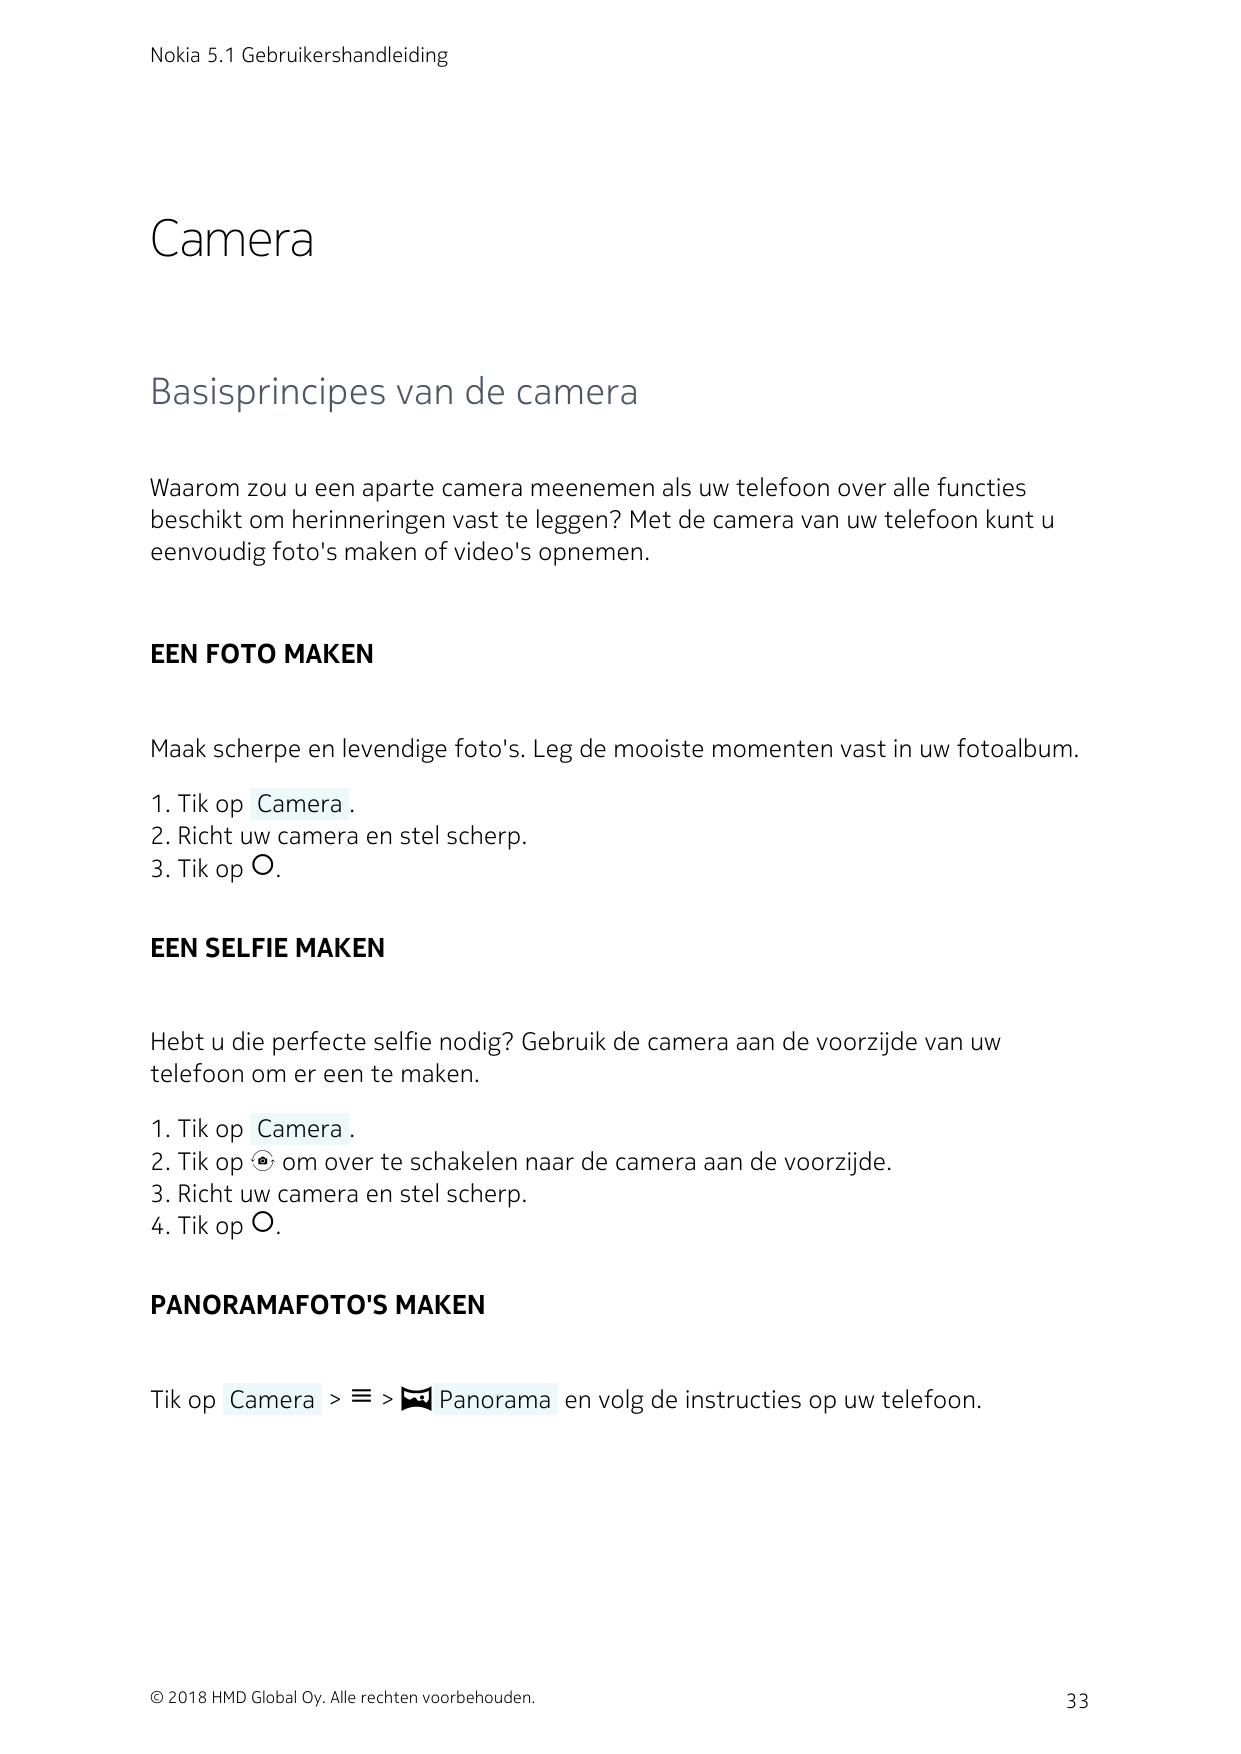 Nokia 5.1 GebruikershandleidingCameraBasisprincipes van de cameraWaarom zou u een aparte camera meenemen als uw telefoon over al